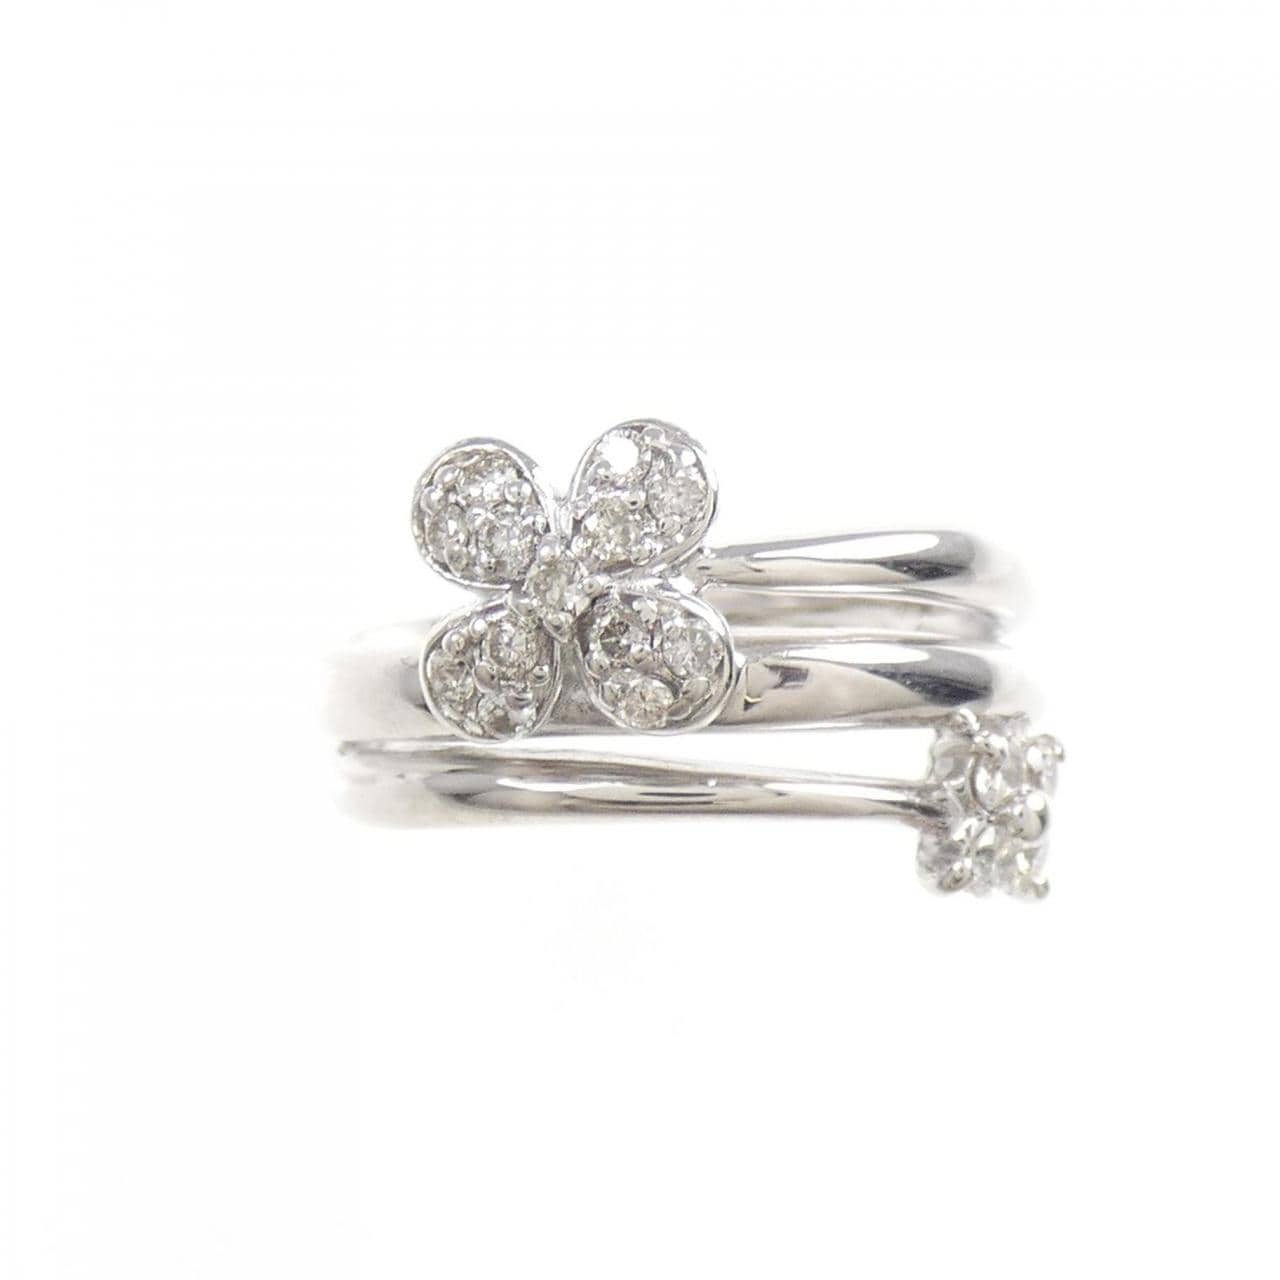 K18WG flower Diamond ring 0.20CT